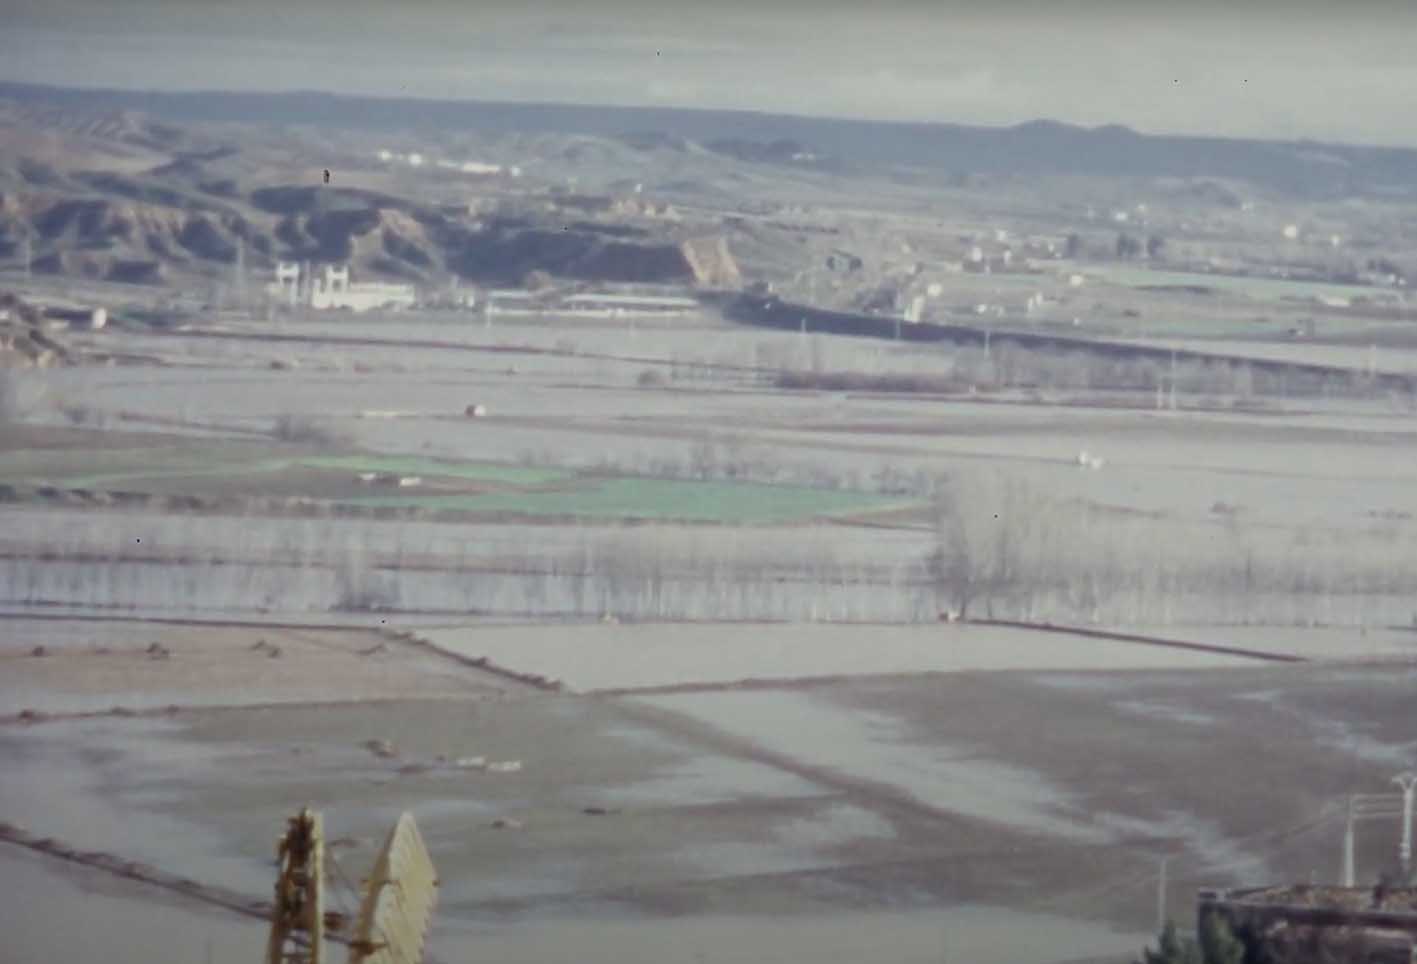 Parte de la crecida del Tajo a su paso por Toledo. Fue en 1969… qué tiempos.